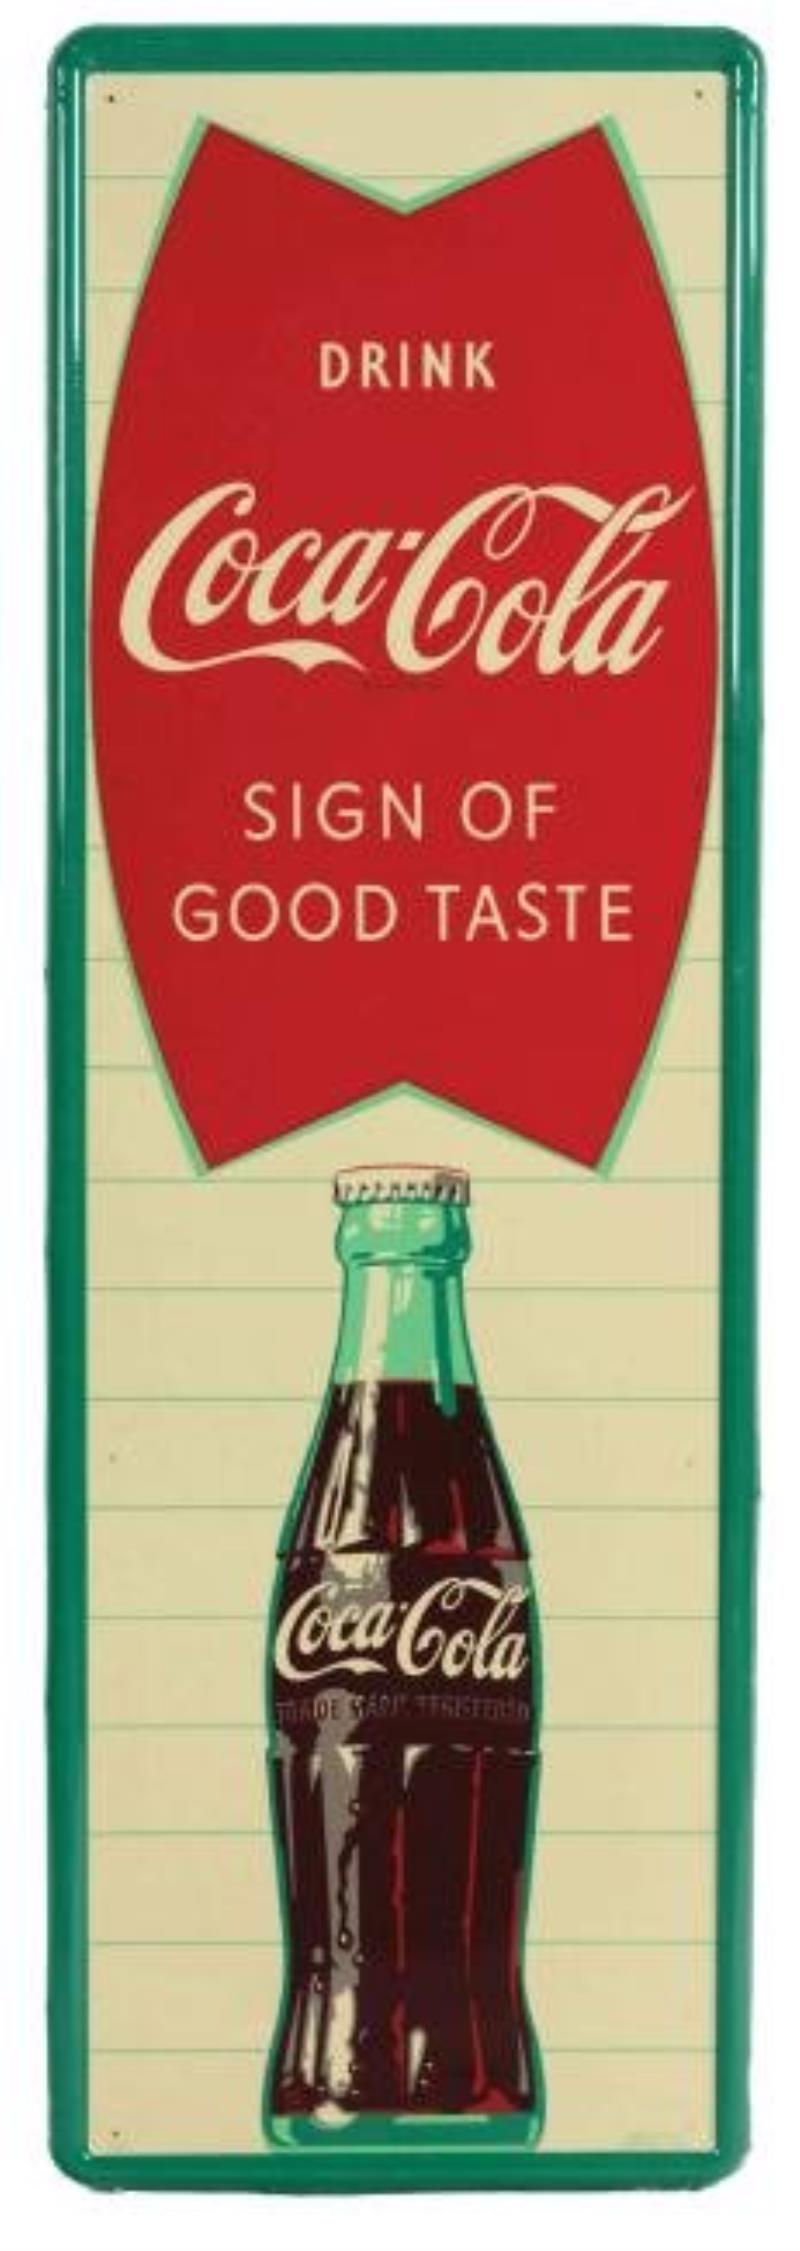 Drink Coca-Cola Sign Of Good Taste Self Framed Vertical